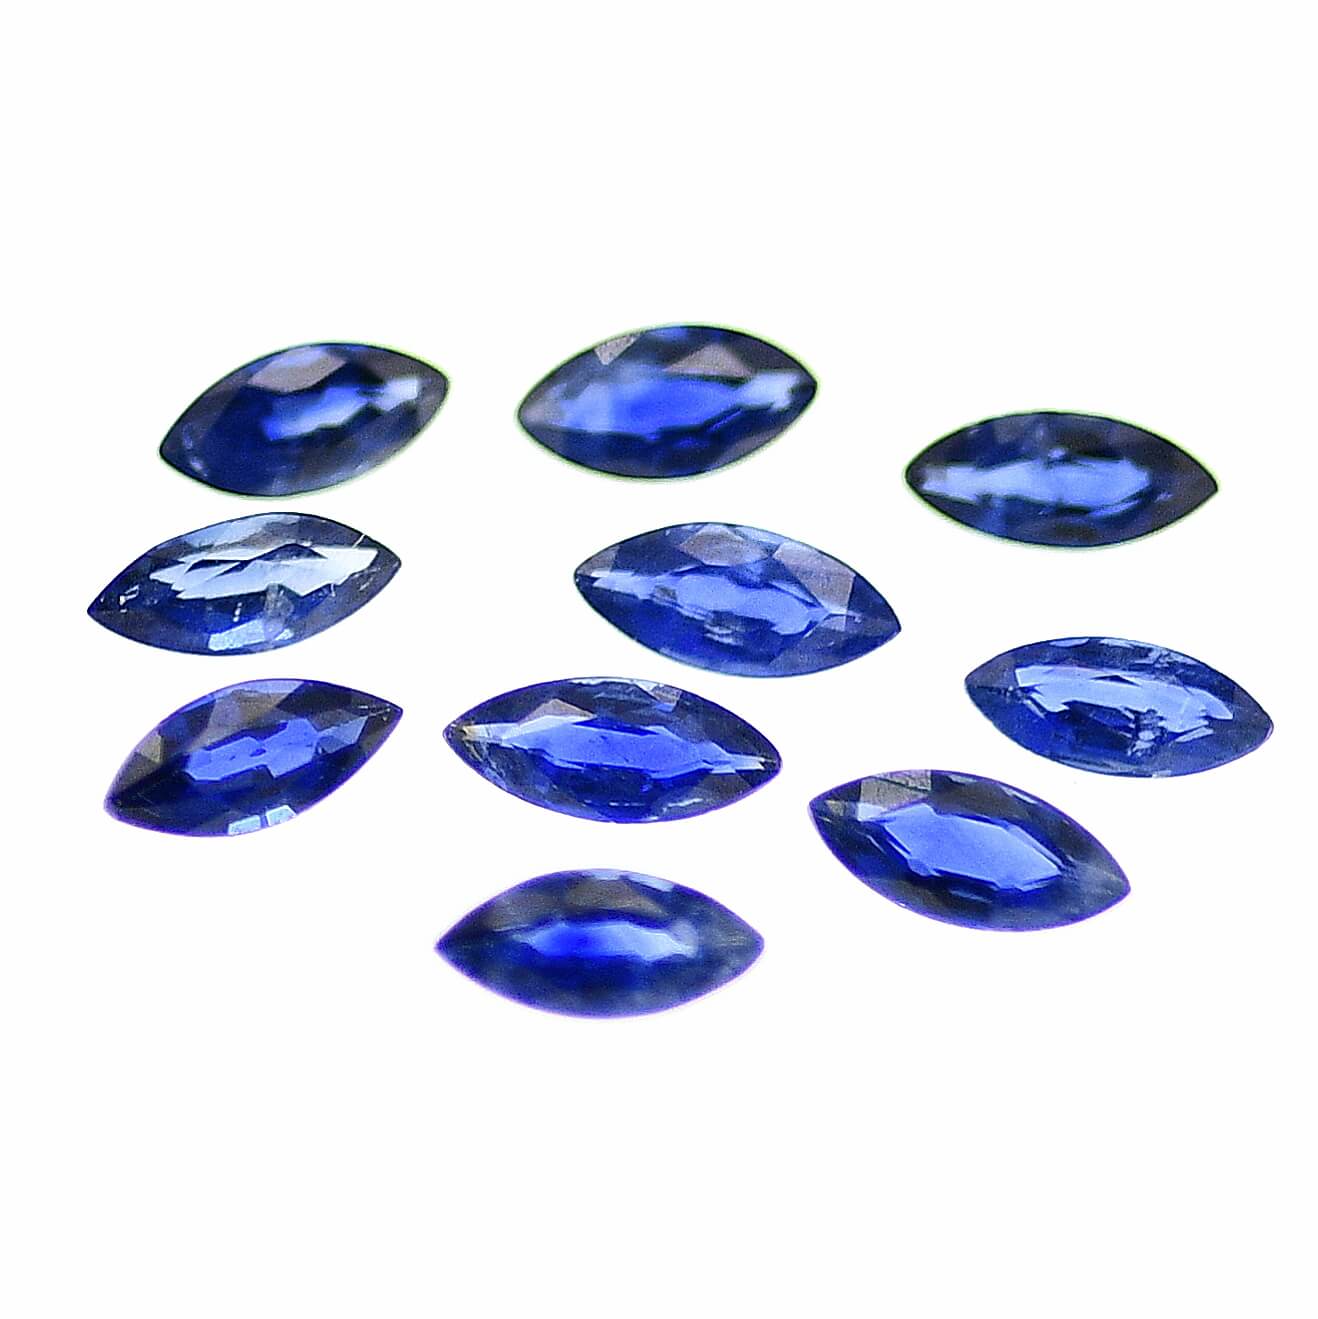 Szafir niebieski kamień do produkcji biżuterii masowej markiza 4 – 6 mm